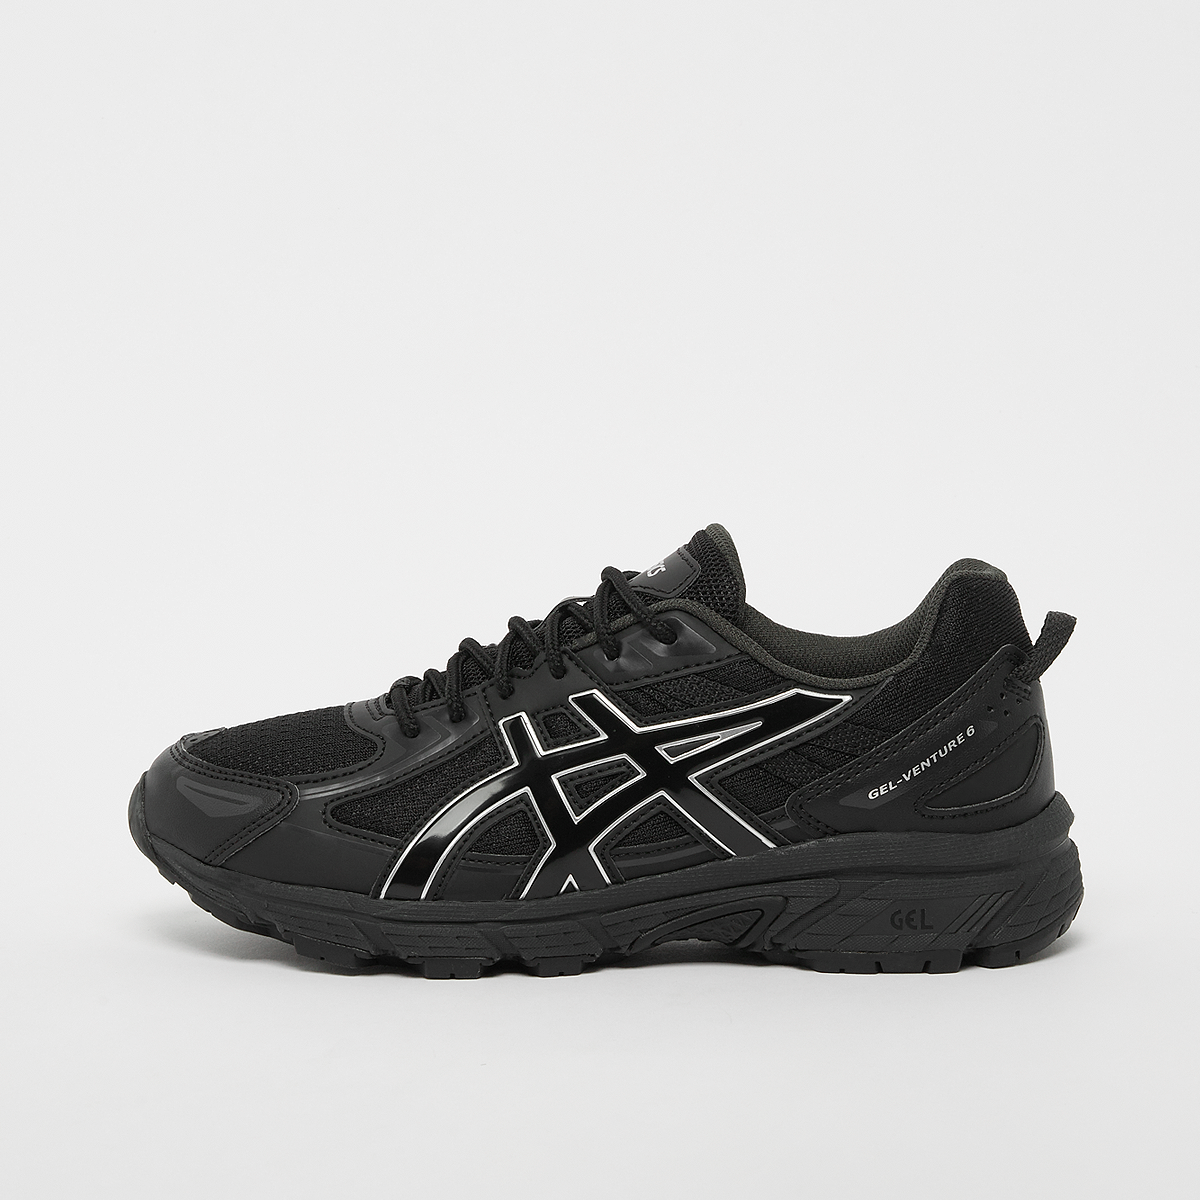 Gel-Venture 6 (GS), ASICS SportStyle, Footwear, black/black, taille: 38